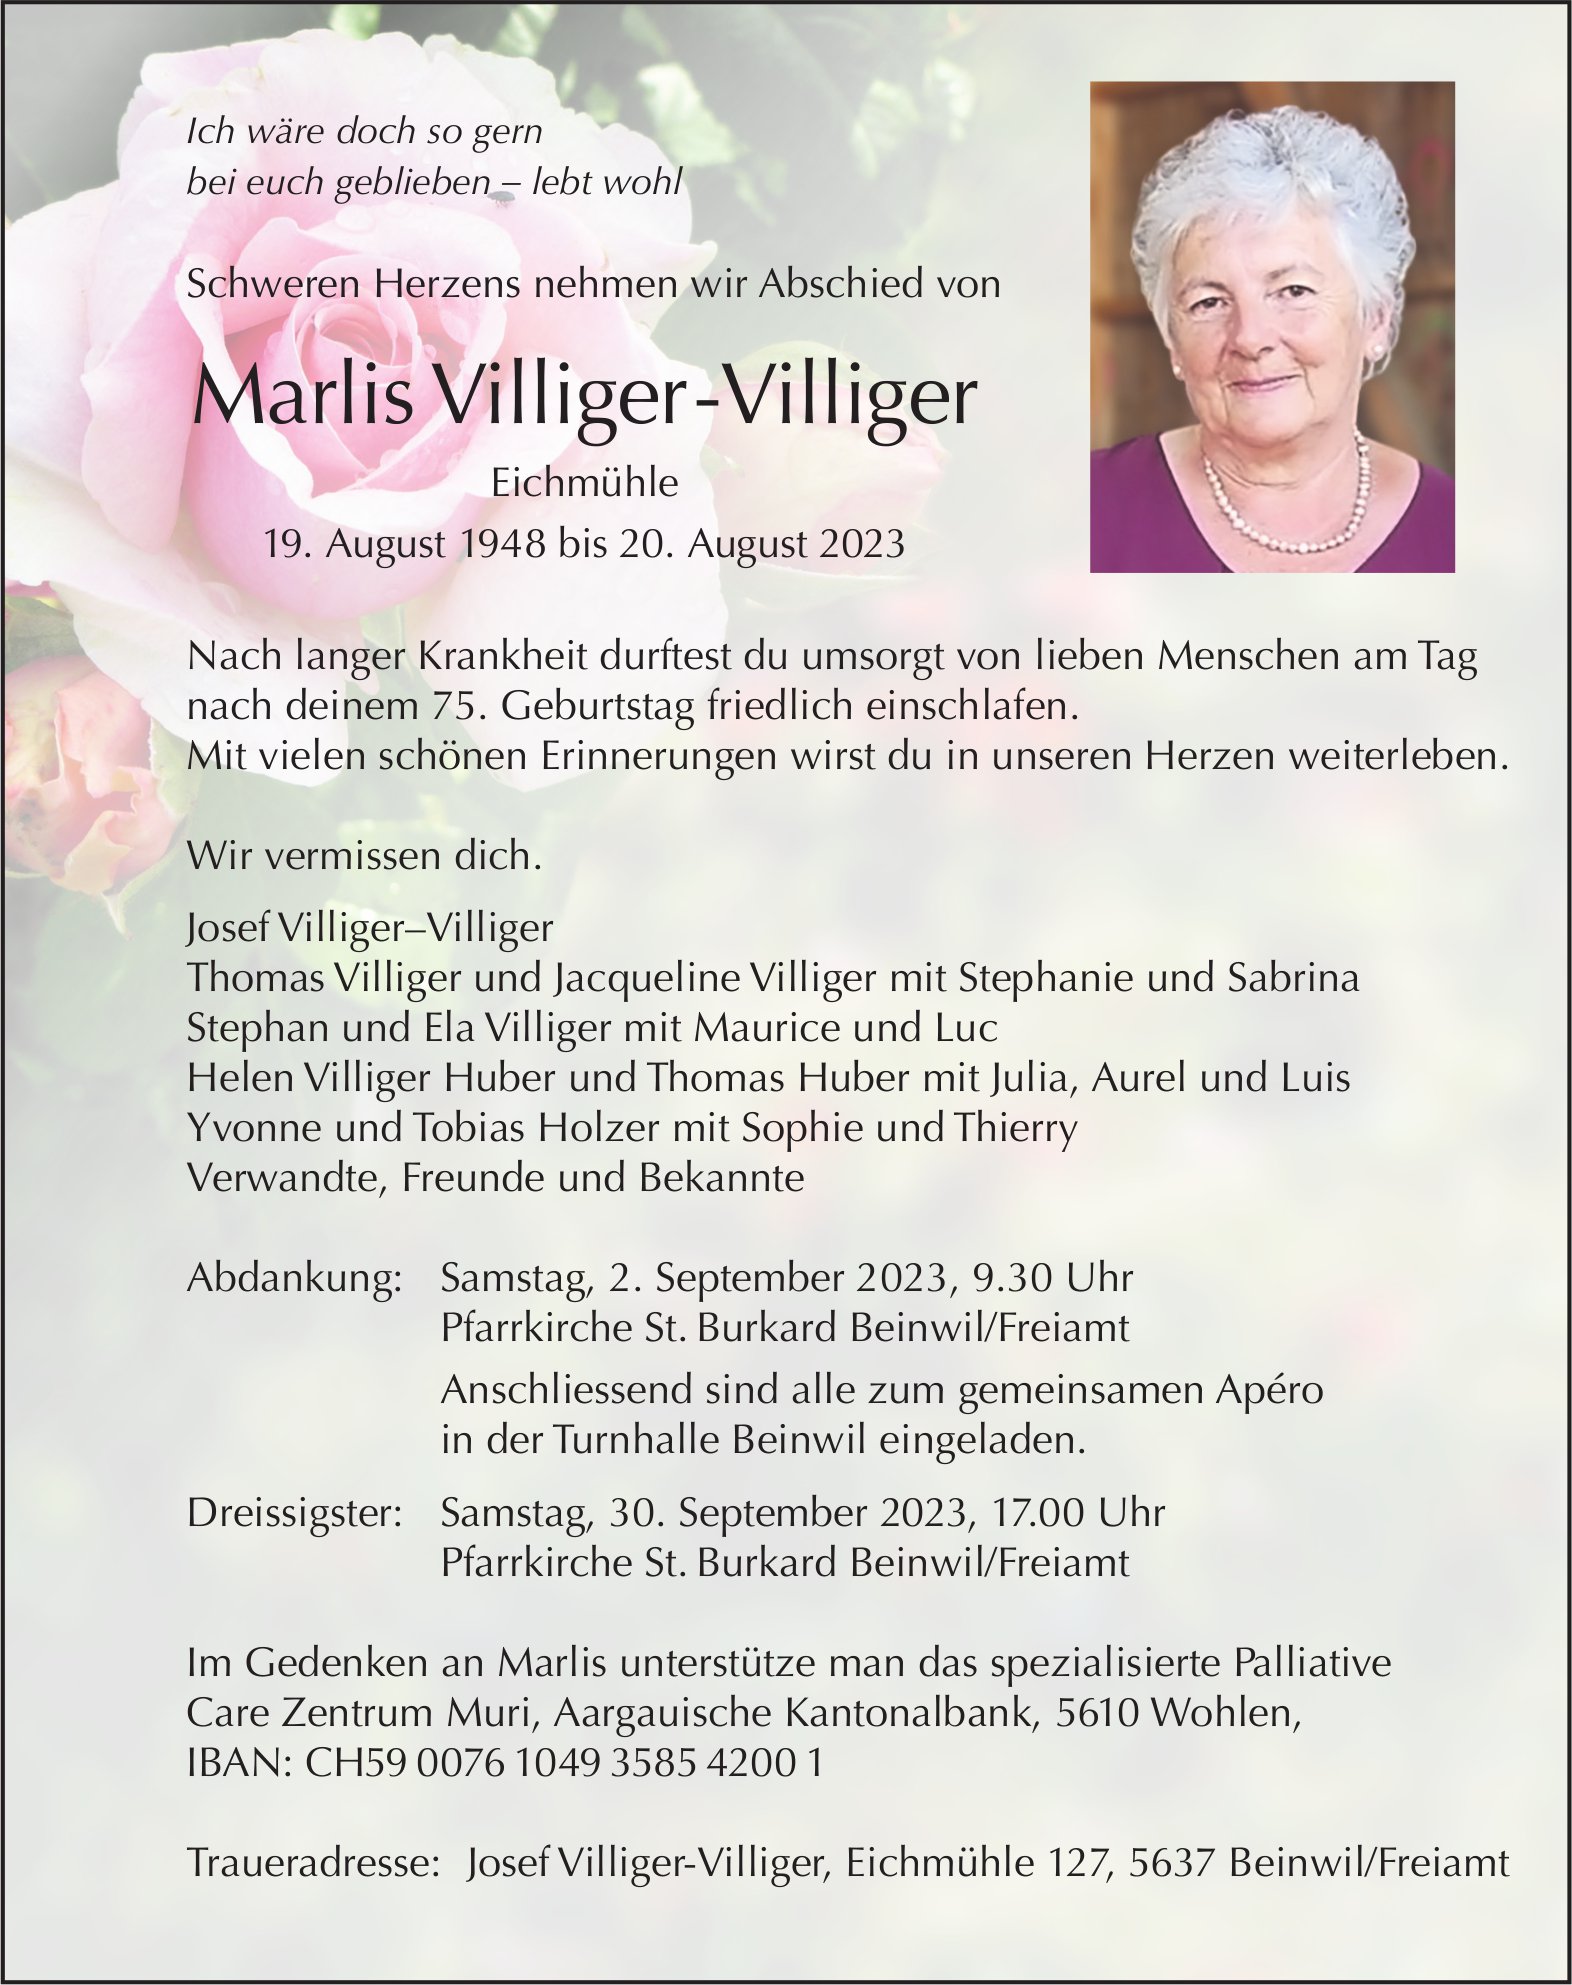 Villiger-Villiger Marlis, August 2023 / TA